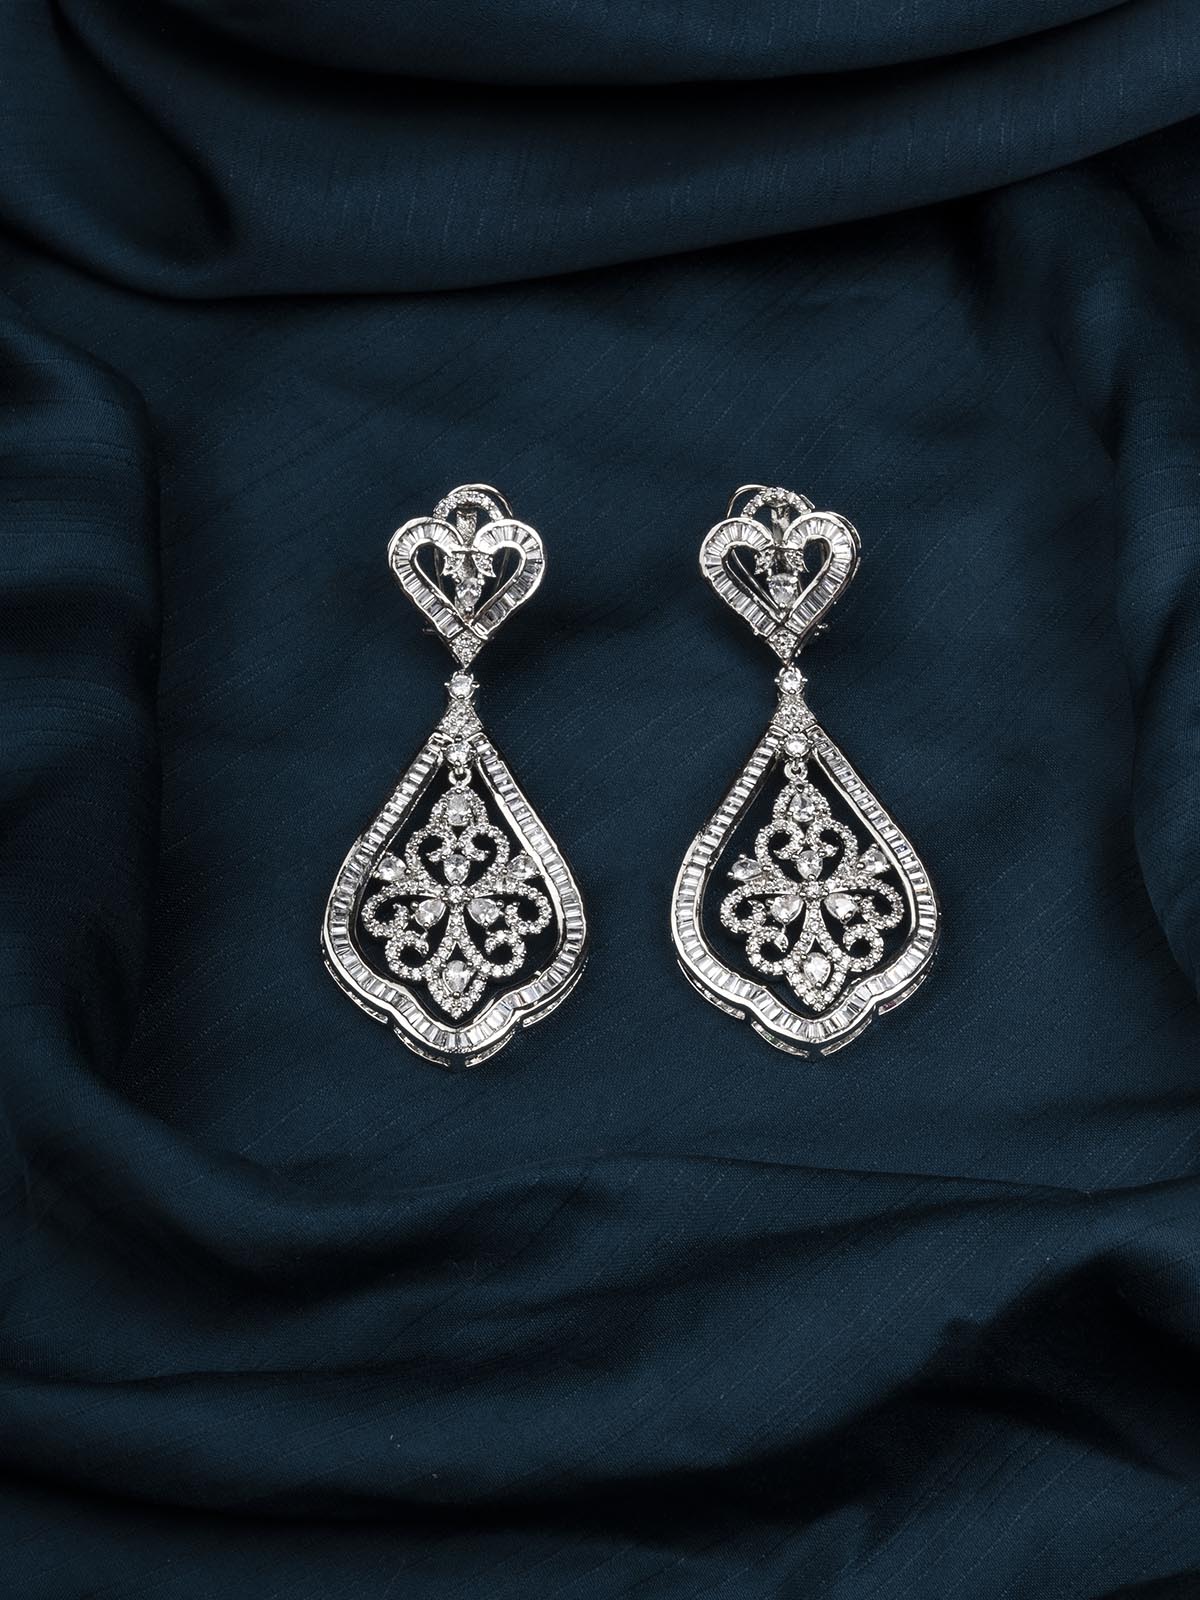 CZEAR516 - Silver Plated Faux Diamond Earrings